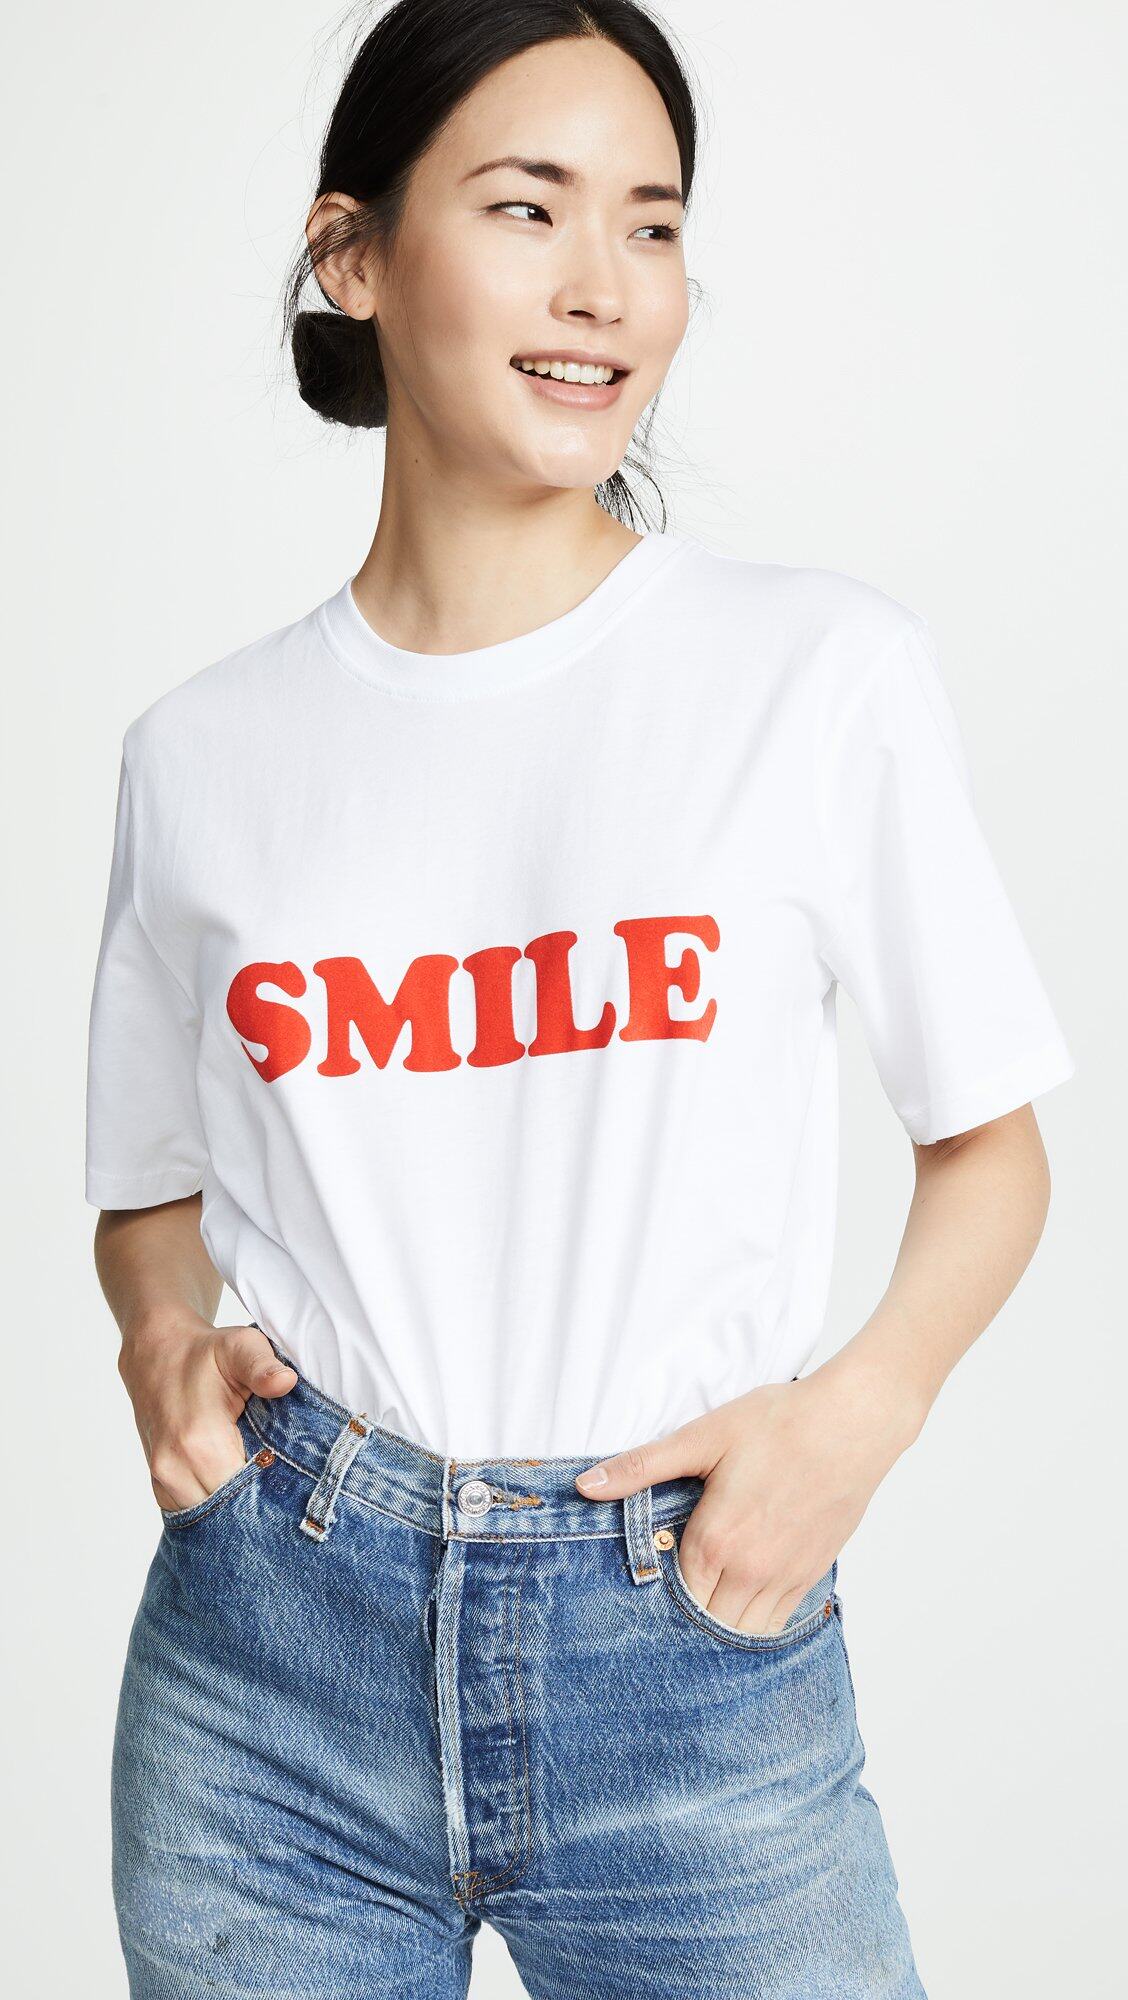 Victoria Victoria Beckham「Smile」白T恤